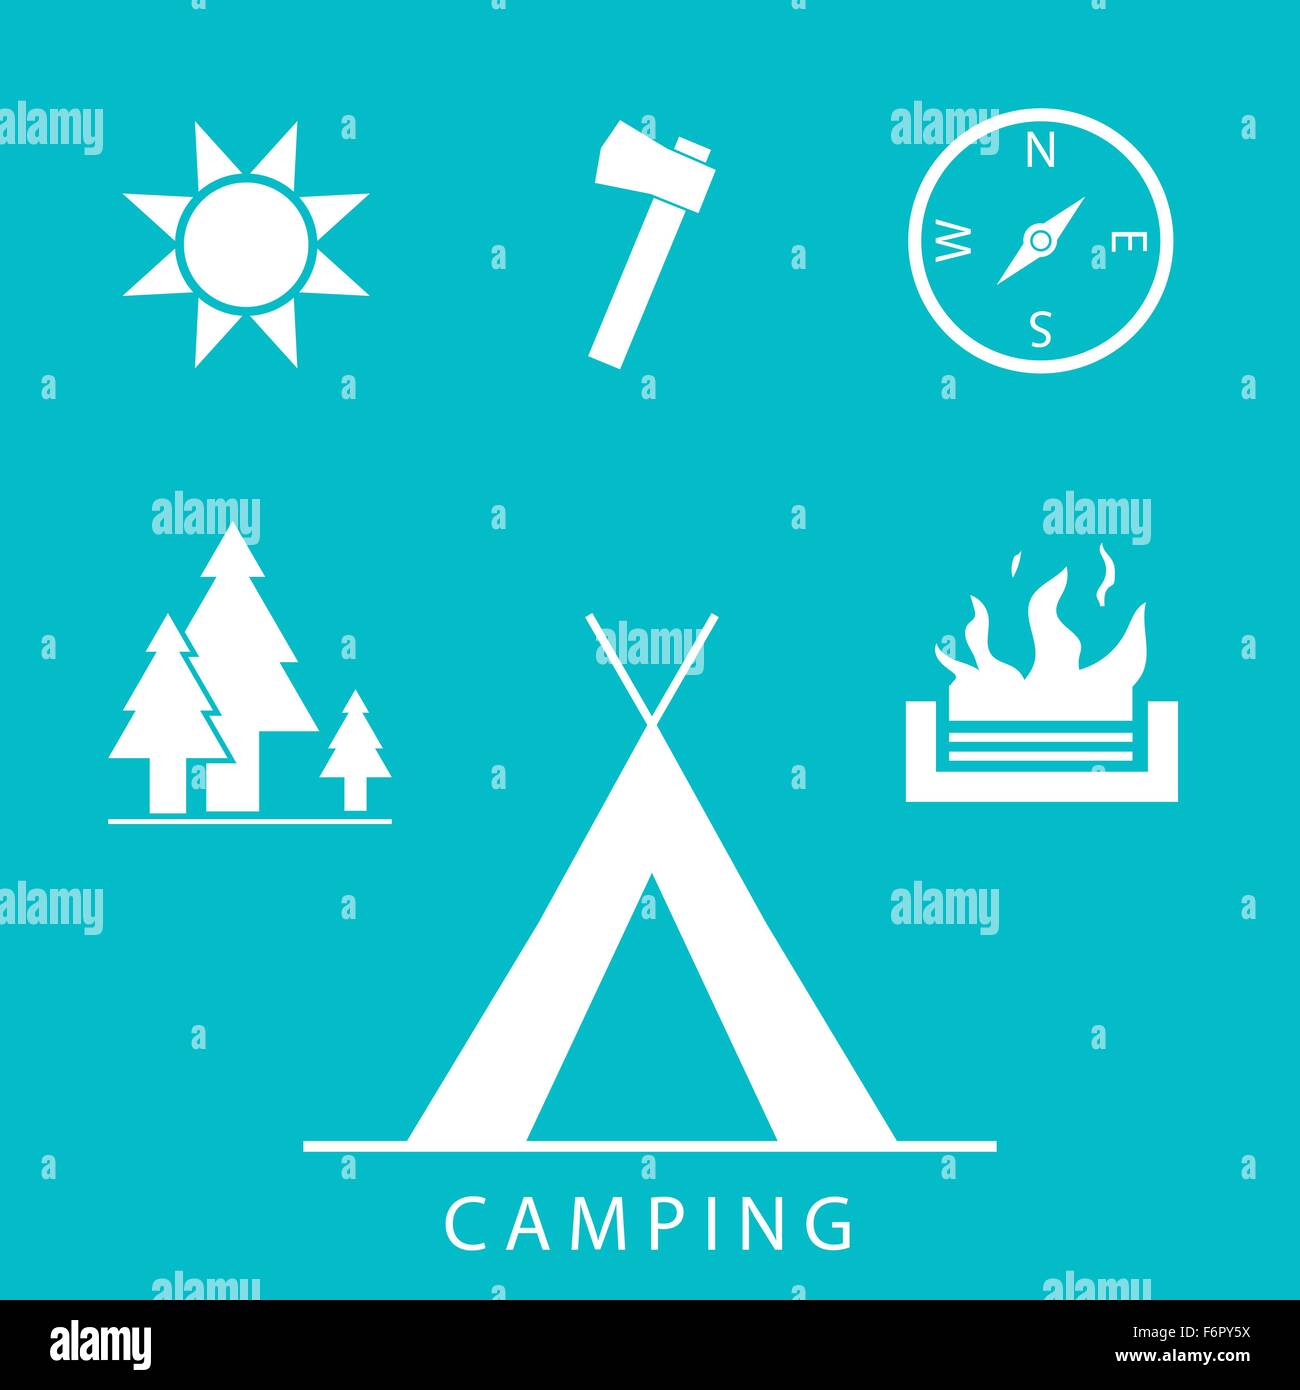 Camping inmitten eines einfachen, flachen Design-Stil Ikonen Stock Vektor